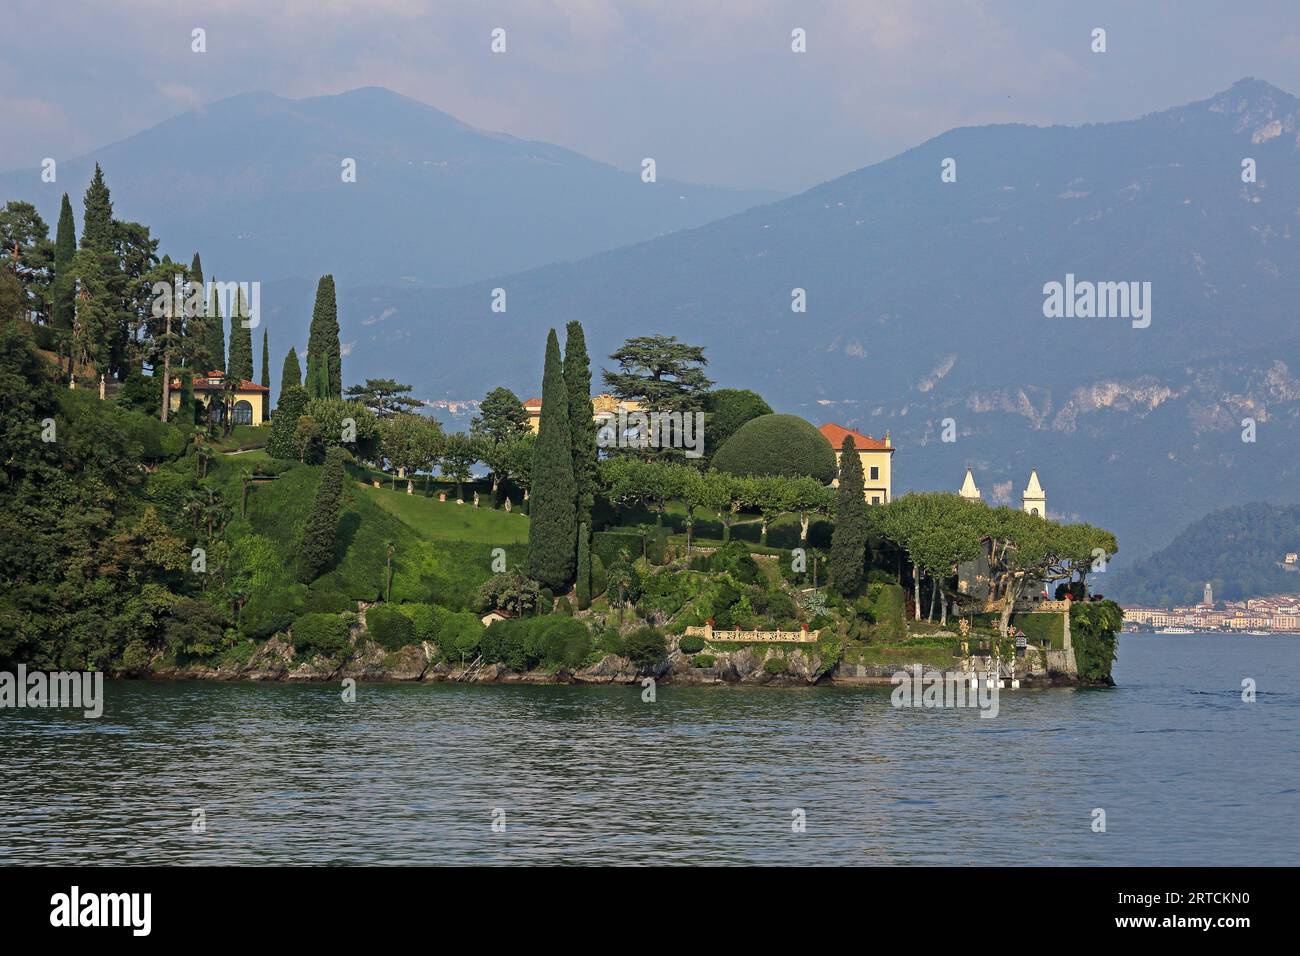 Villa de Balbianello, Sala Comacina, Lake Como, Lombardy Italy Stock Photo